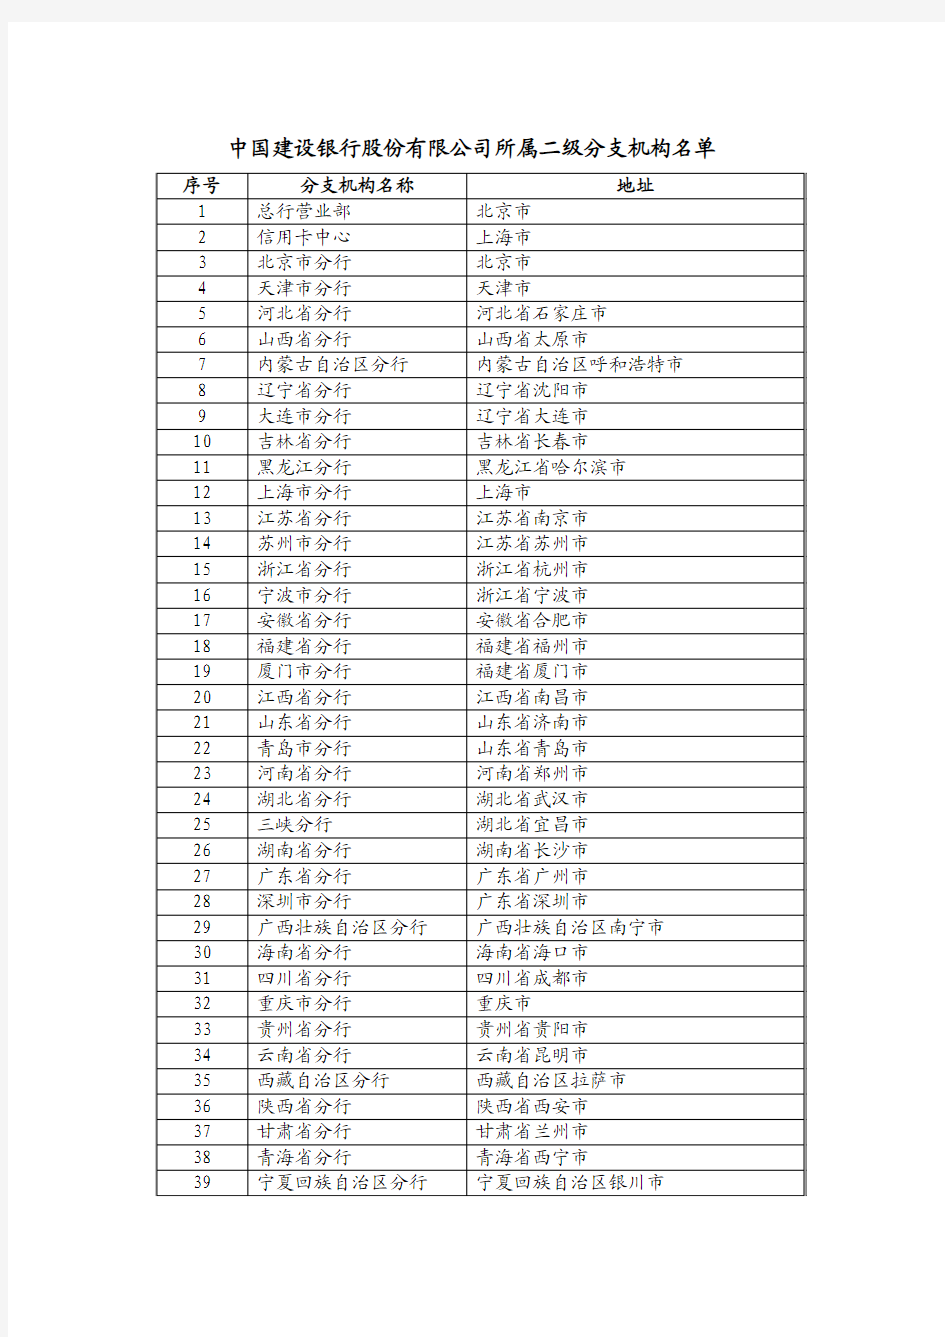 中国建设银行股份有限公司所属二级分支机构名单